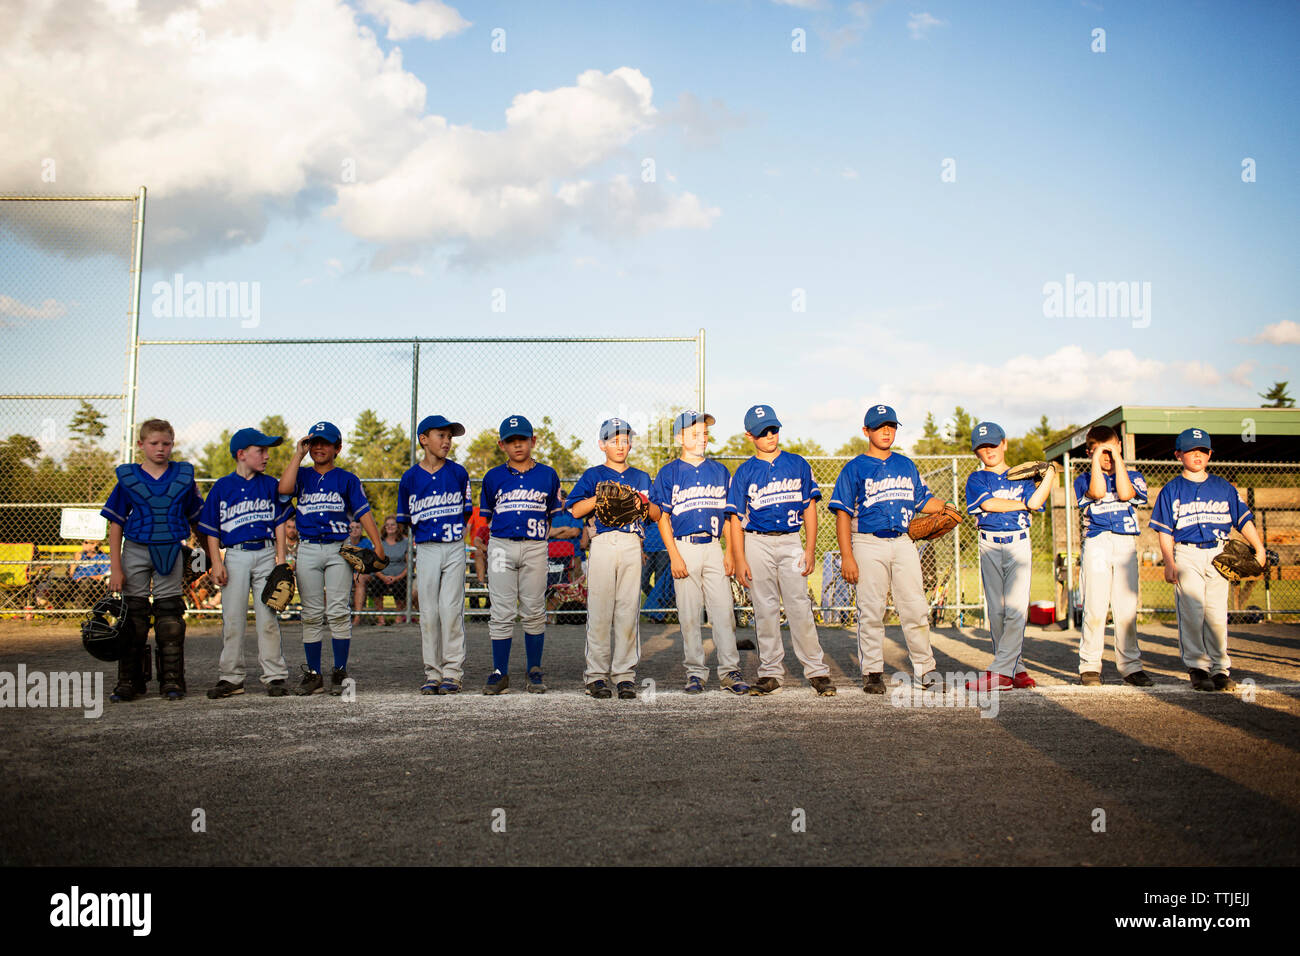 El equipo de béisbol de pie en campo contra el cielo Foto de stock